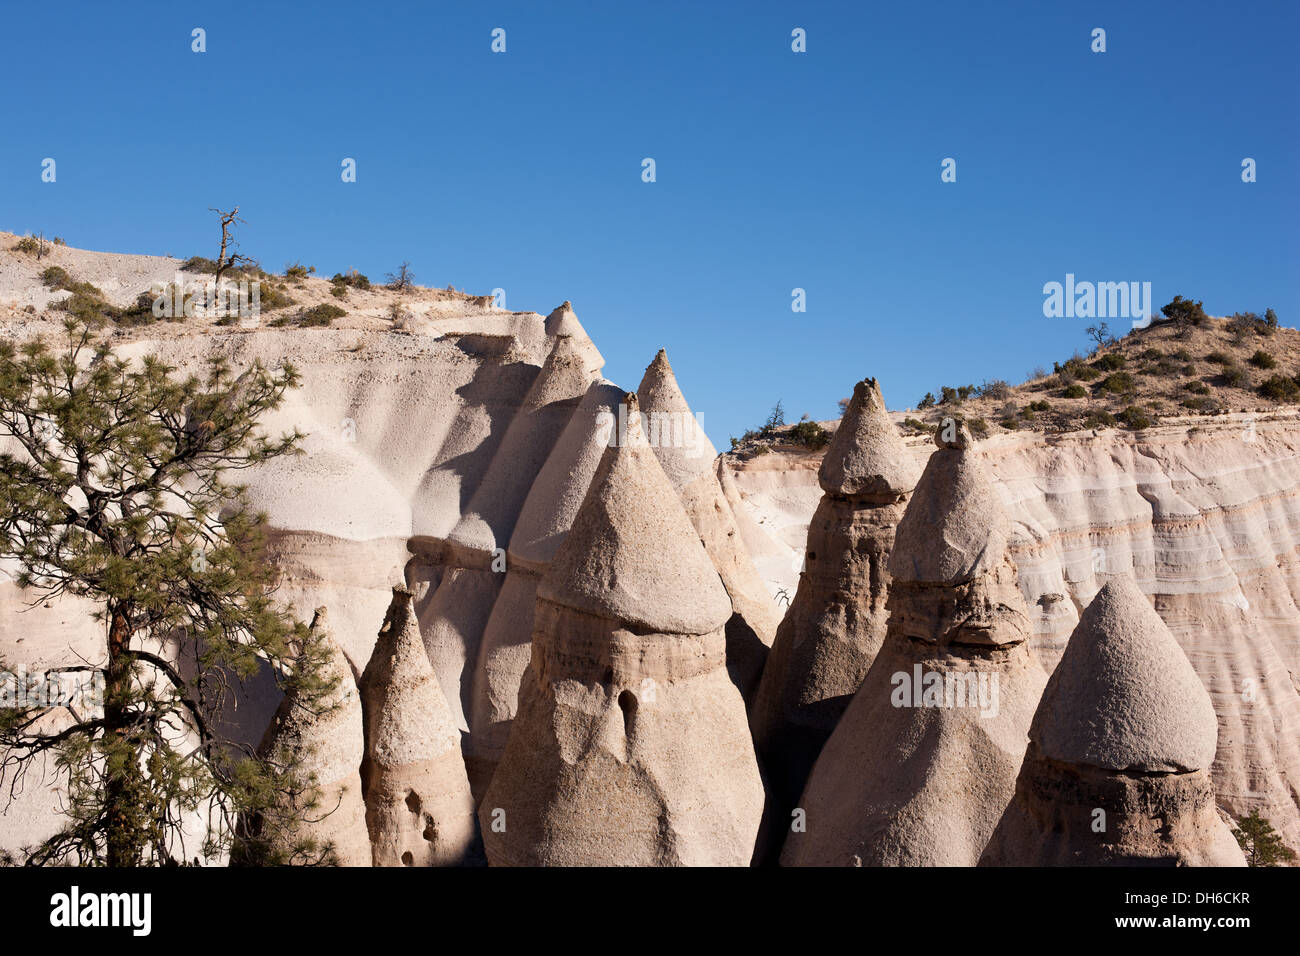 Rocas en forma de cono talladas en un yacimiento volcánico (piedra pómez, ceniza). Monumento Nacional Kasha-Katuwe Tent Rock, Condado de Sandoval, Nuevo México, Estados Unidos. Foto de stock